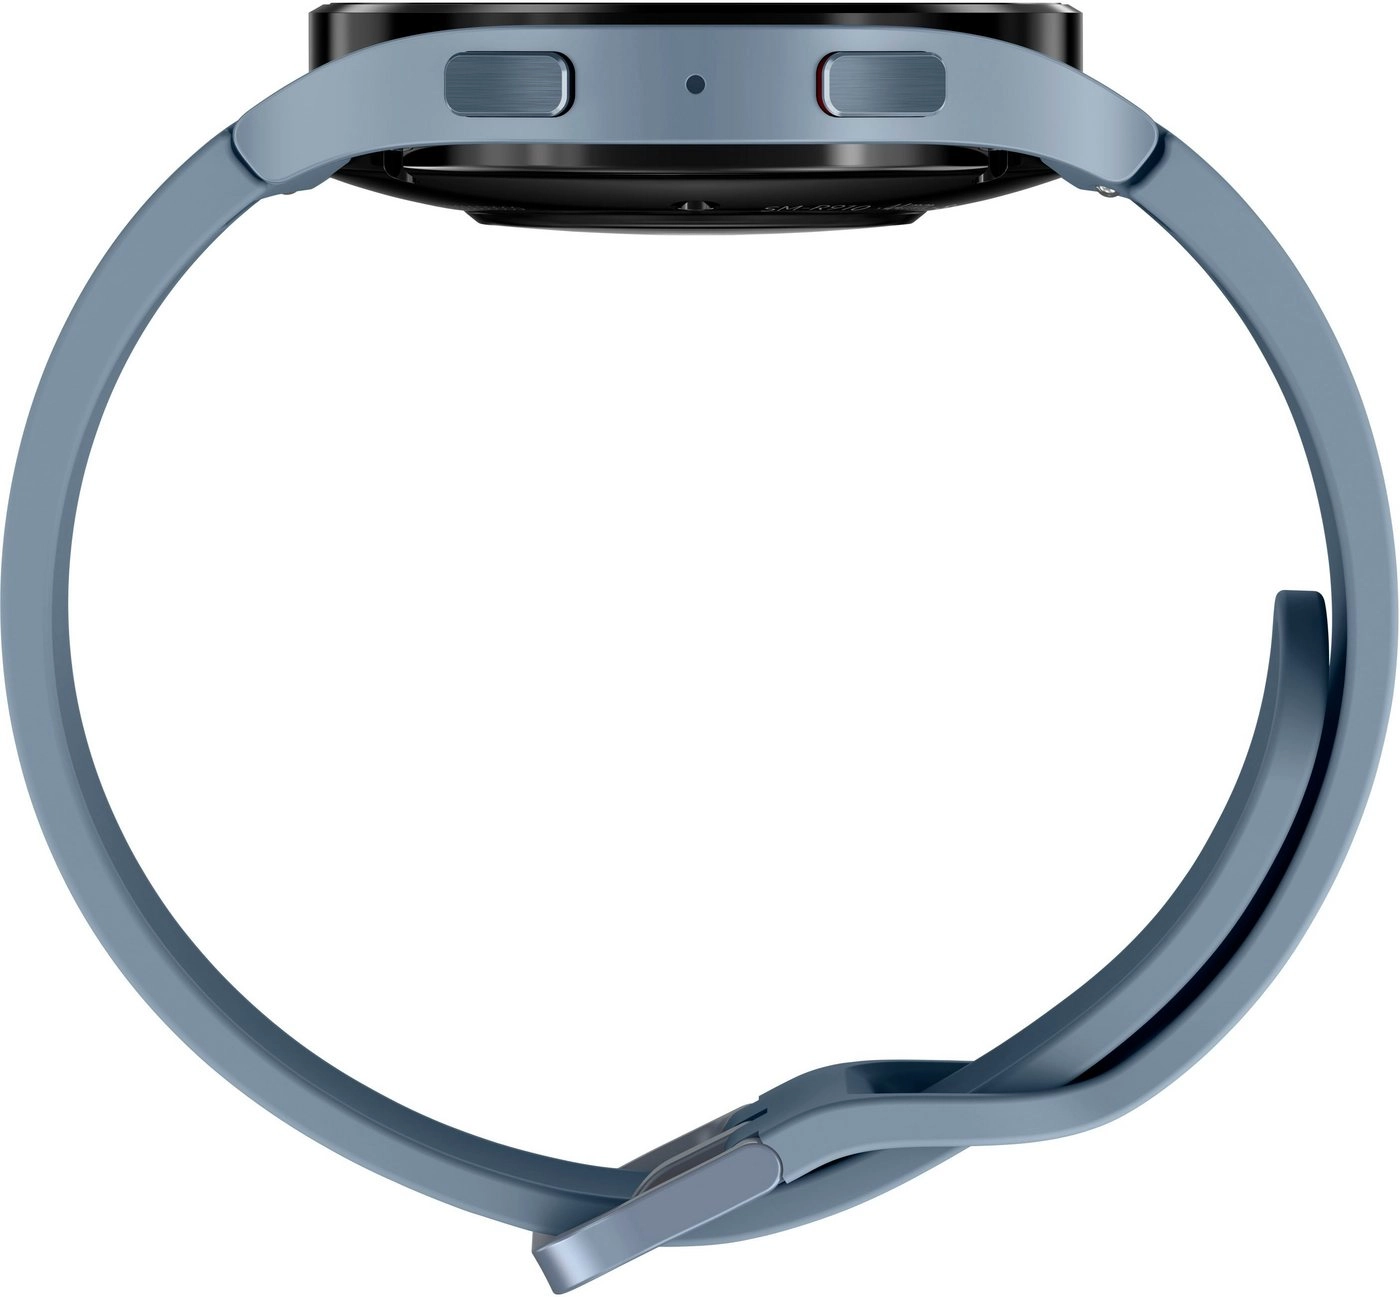 Samsung Galaxy Watch 5 (44mm) in blau | Smartwatch | Bis zu 80 Stunden Akkulaufzeit | Wassergeschützt bis 5 ATM | Blutdruck-Messung | Sturzerkennung